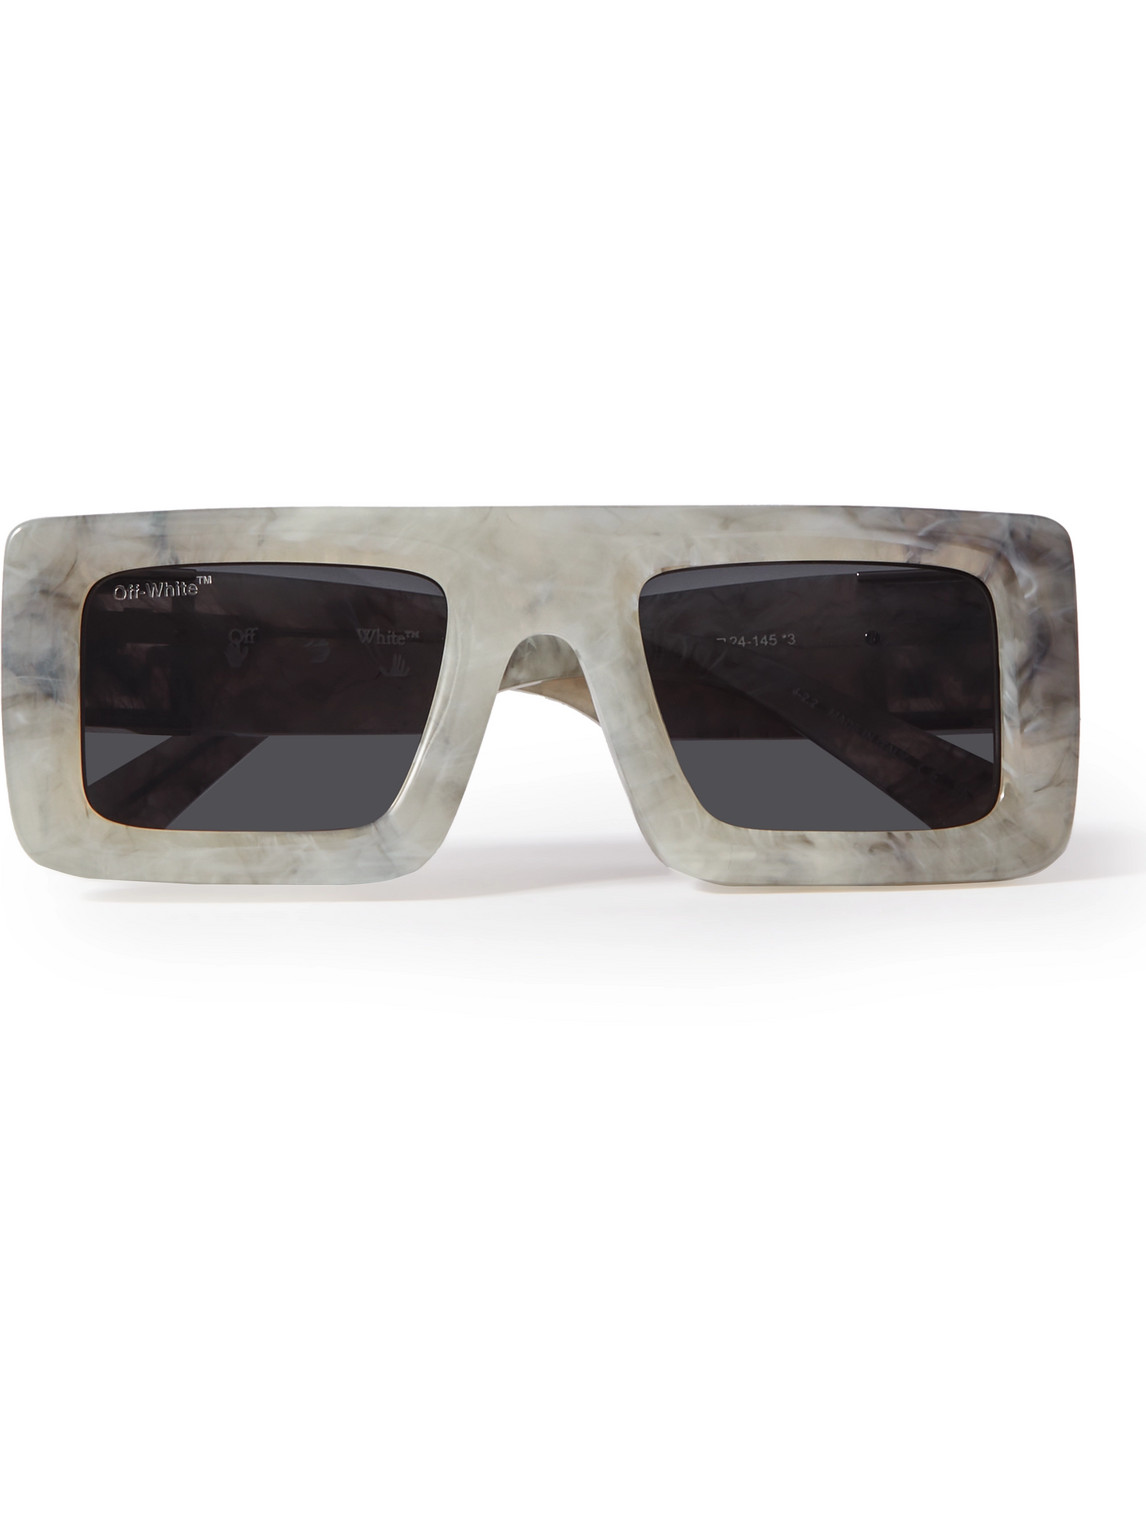 Off-White - Leonardo Square-Frame Acetate Sunglasses - Men - Gray von Off-White